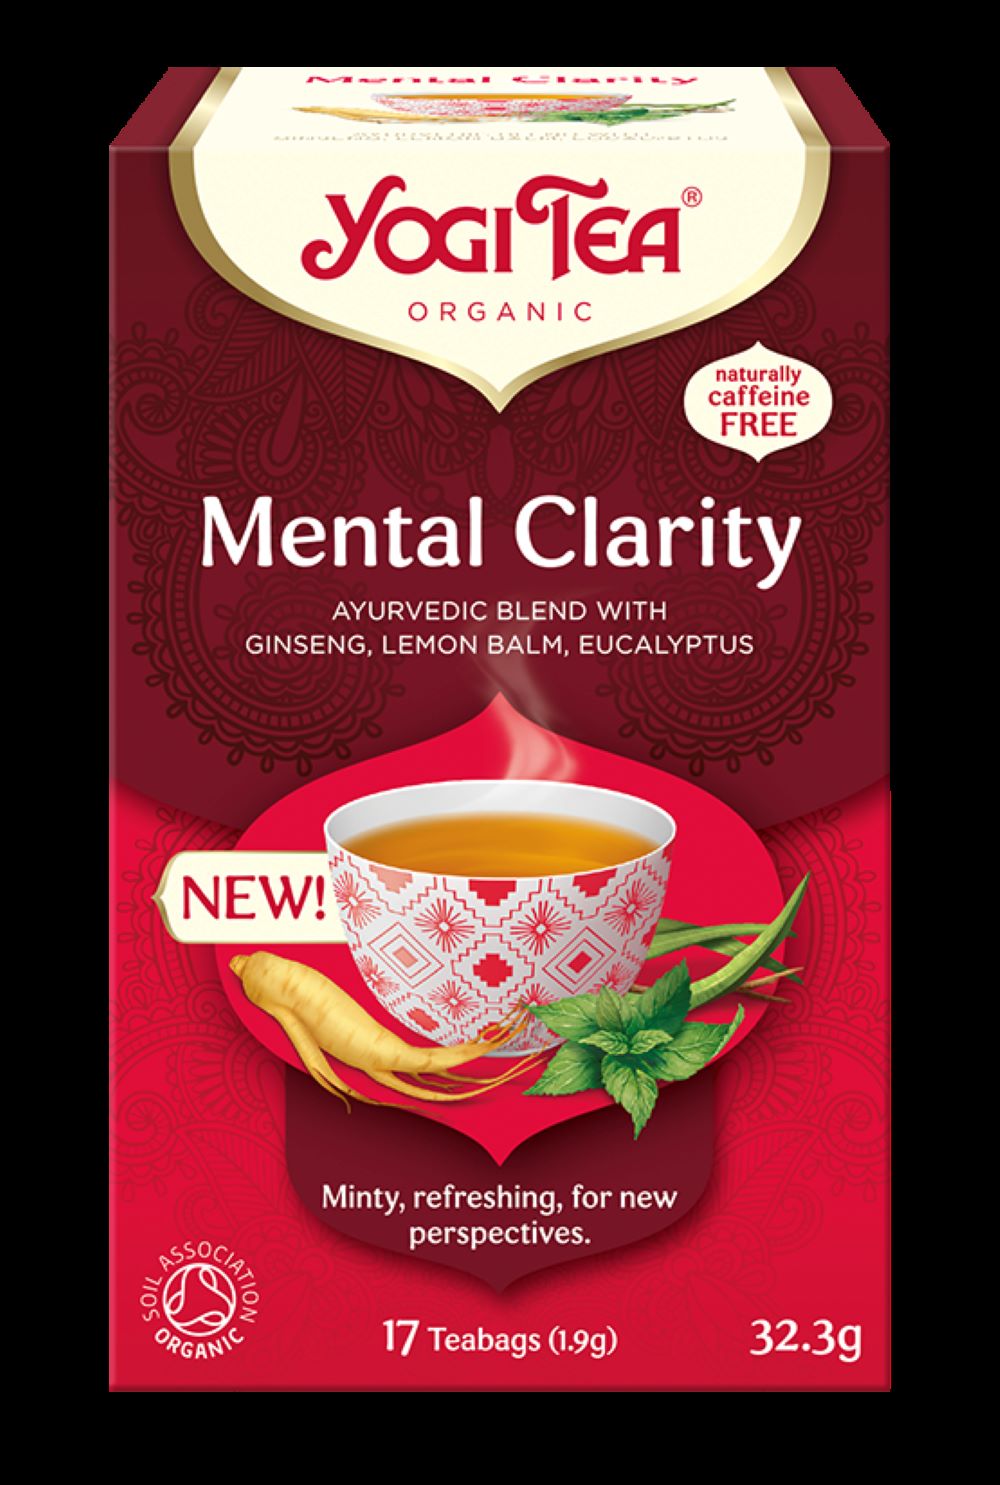 Mental Clarity - Yogi tea